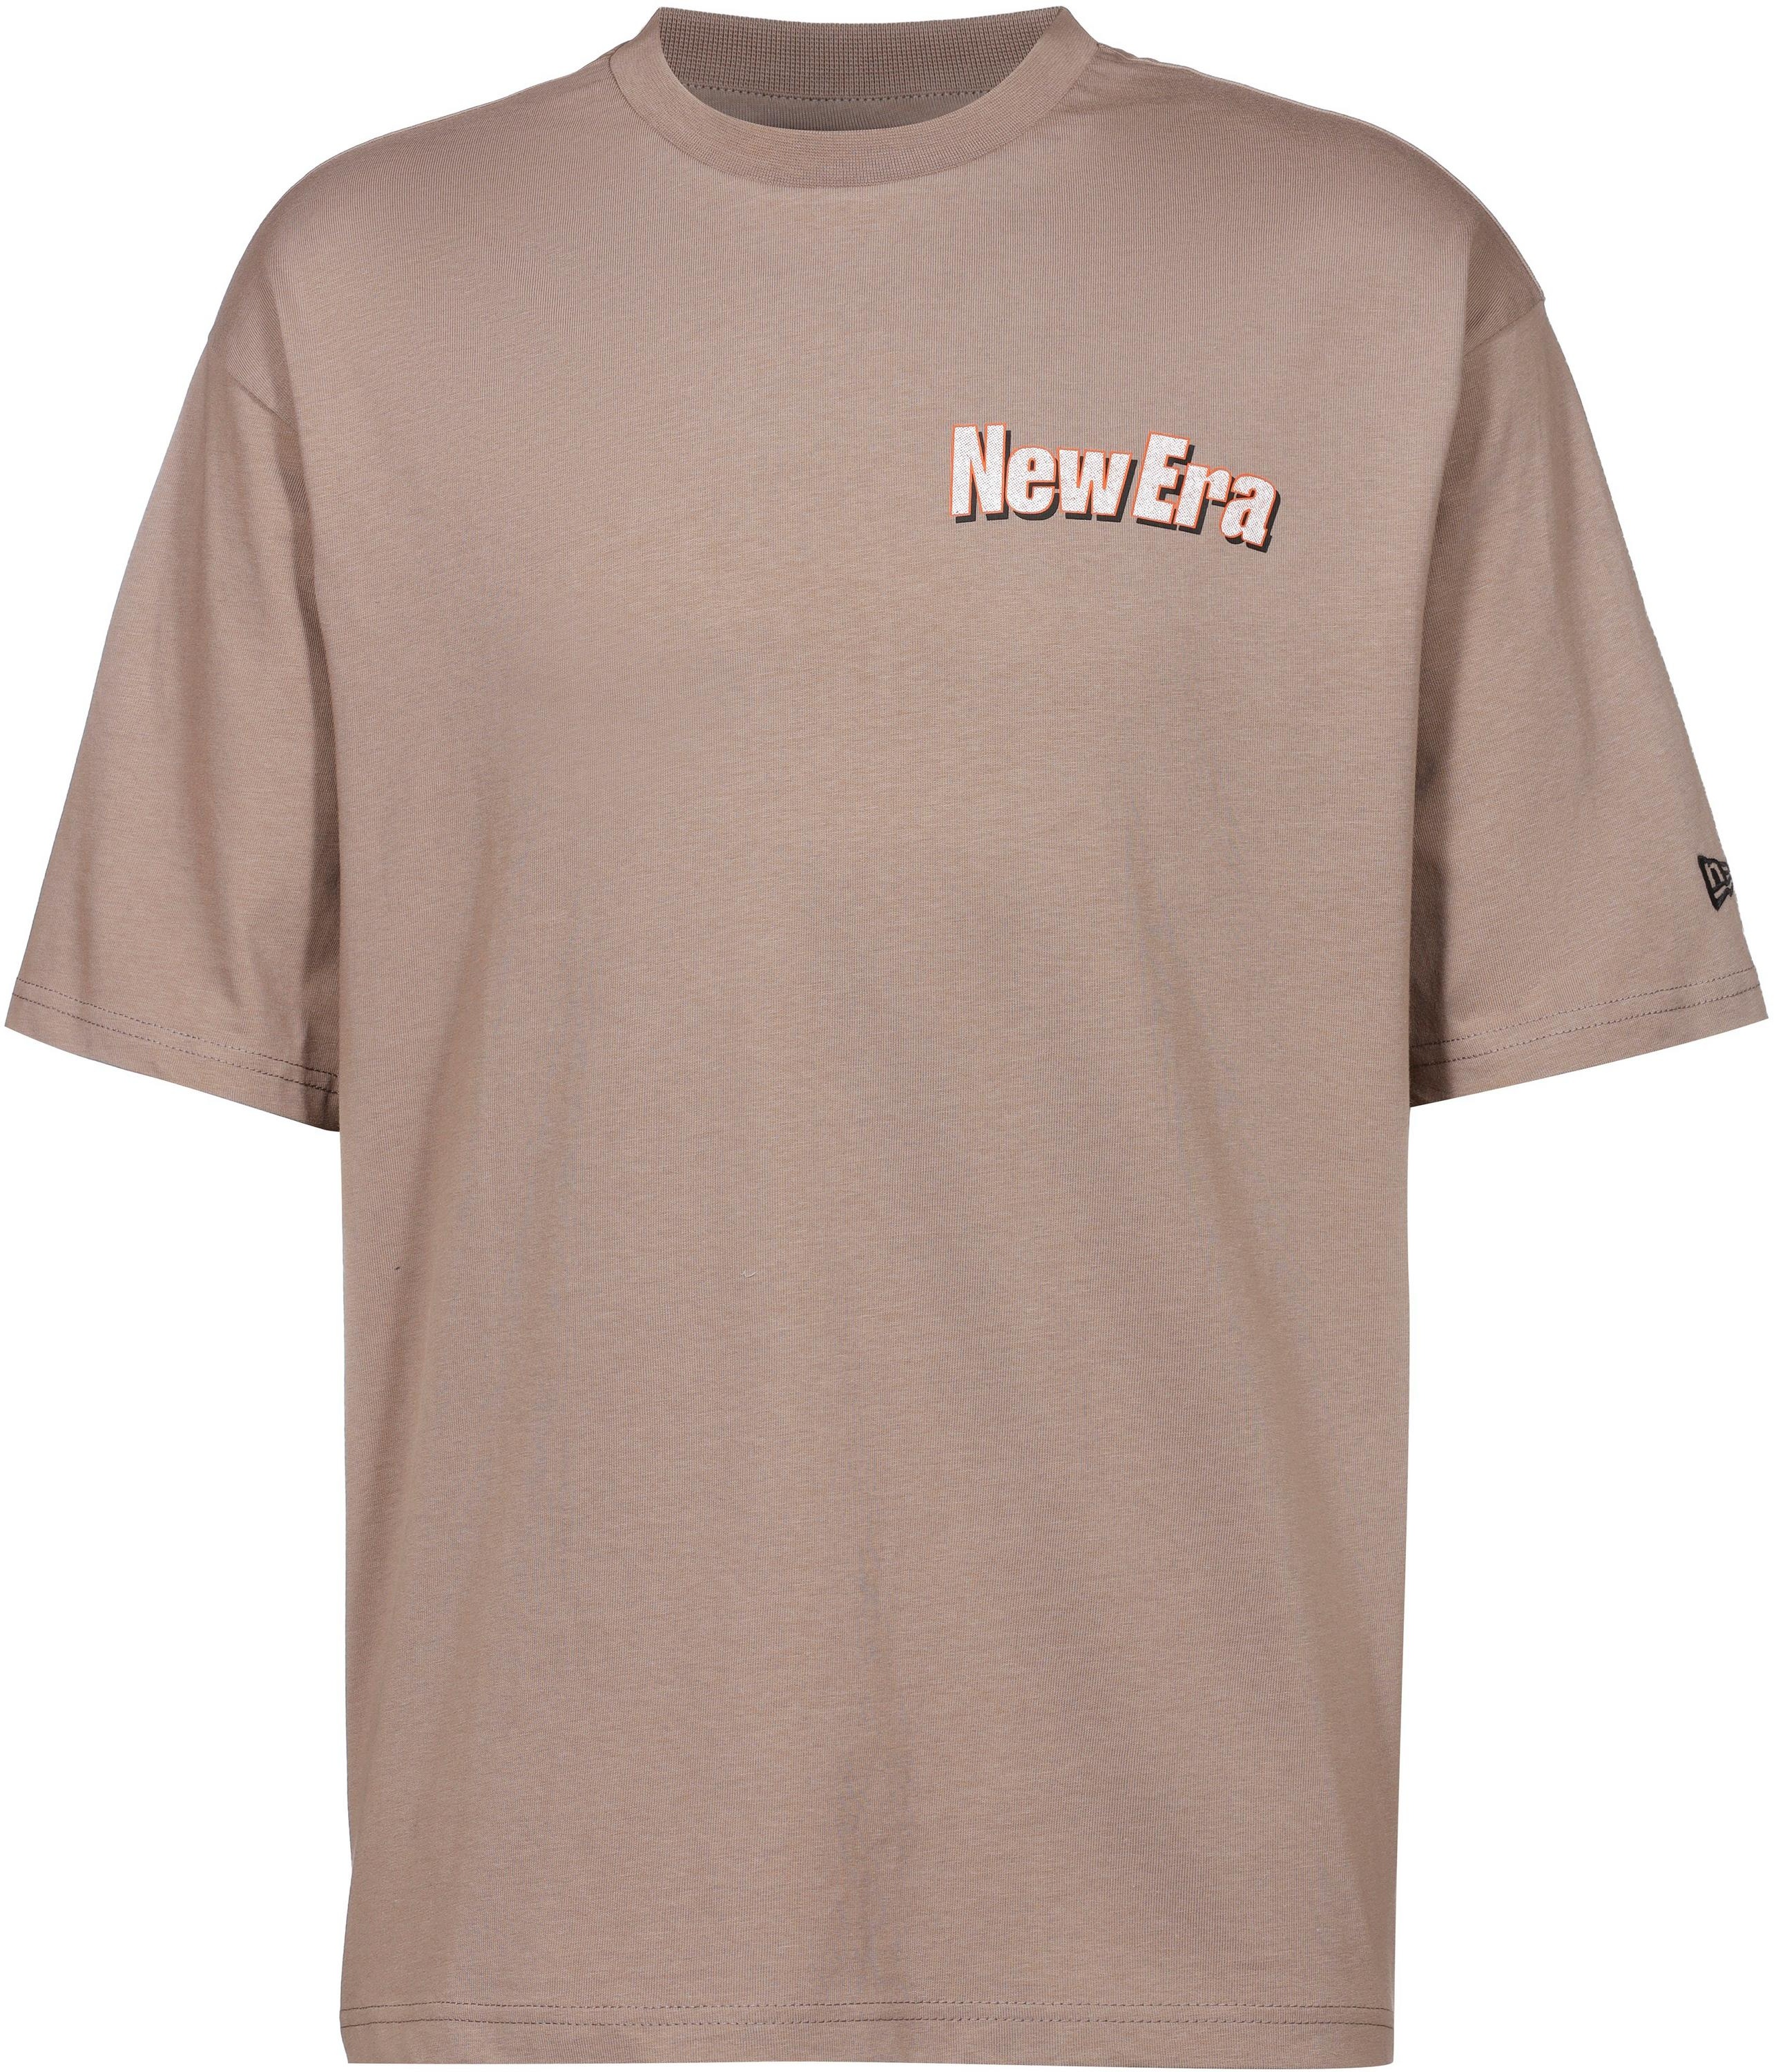 New Era Oversize Shirt Herren in brown stone, Größe XL - braun